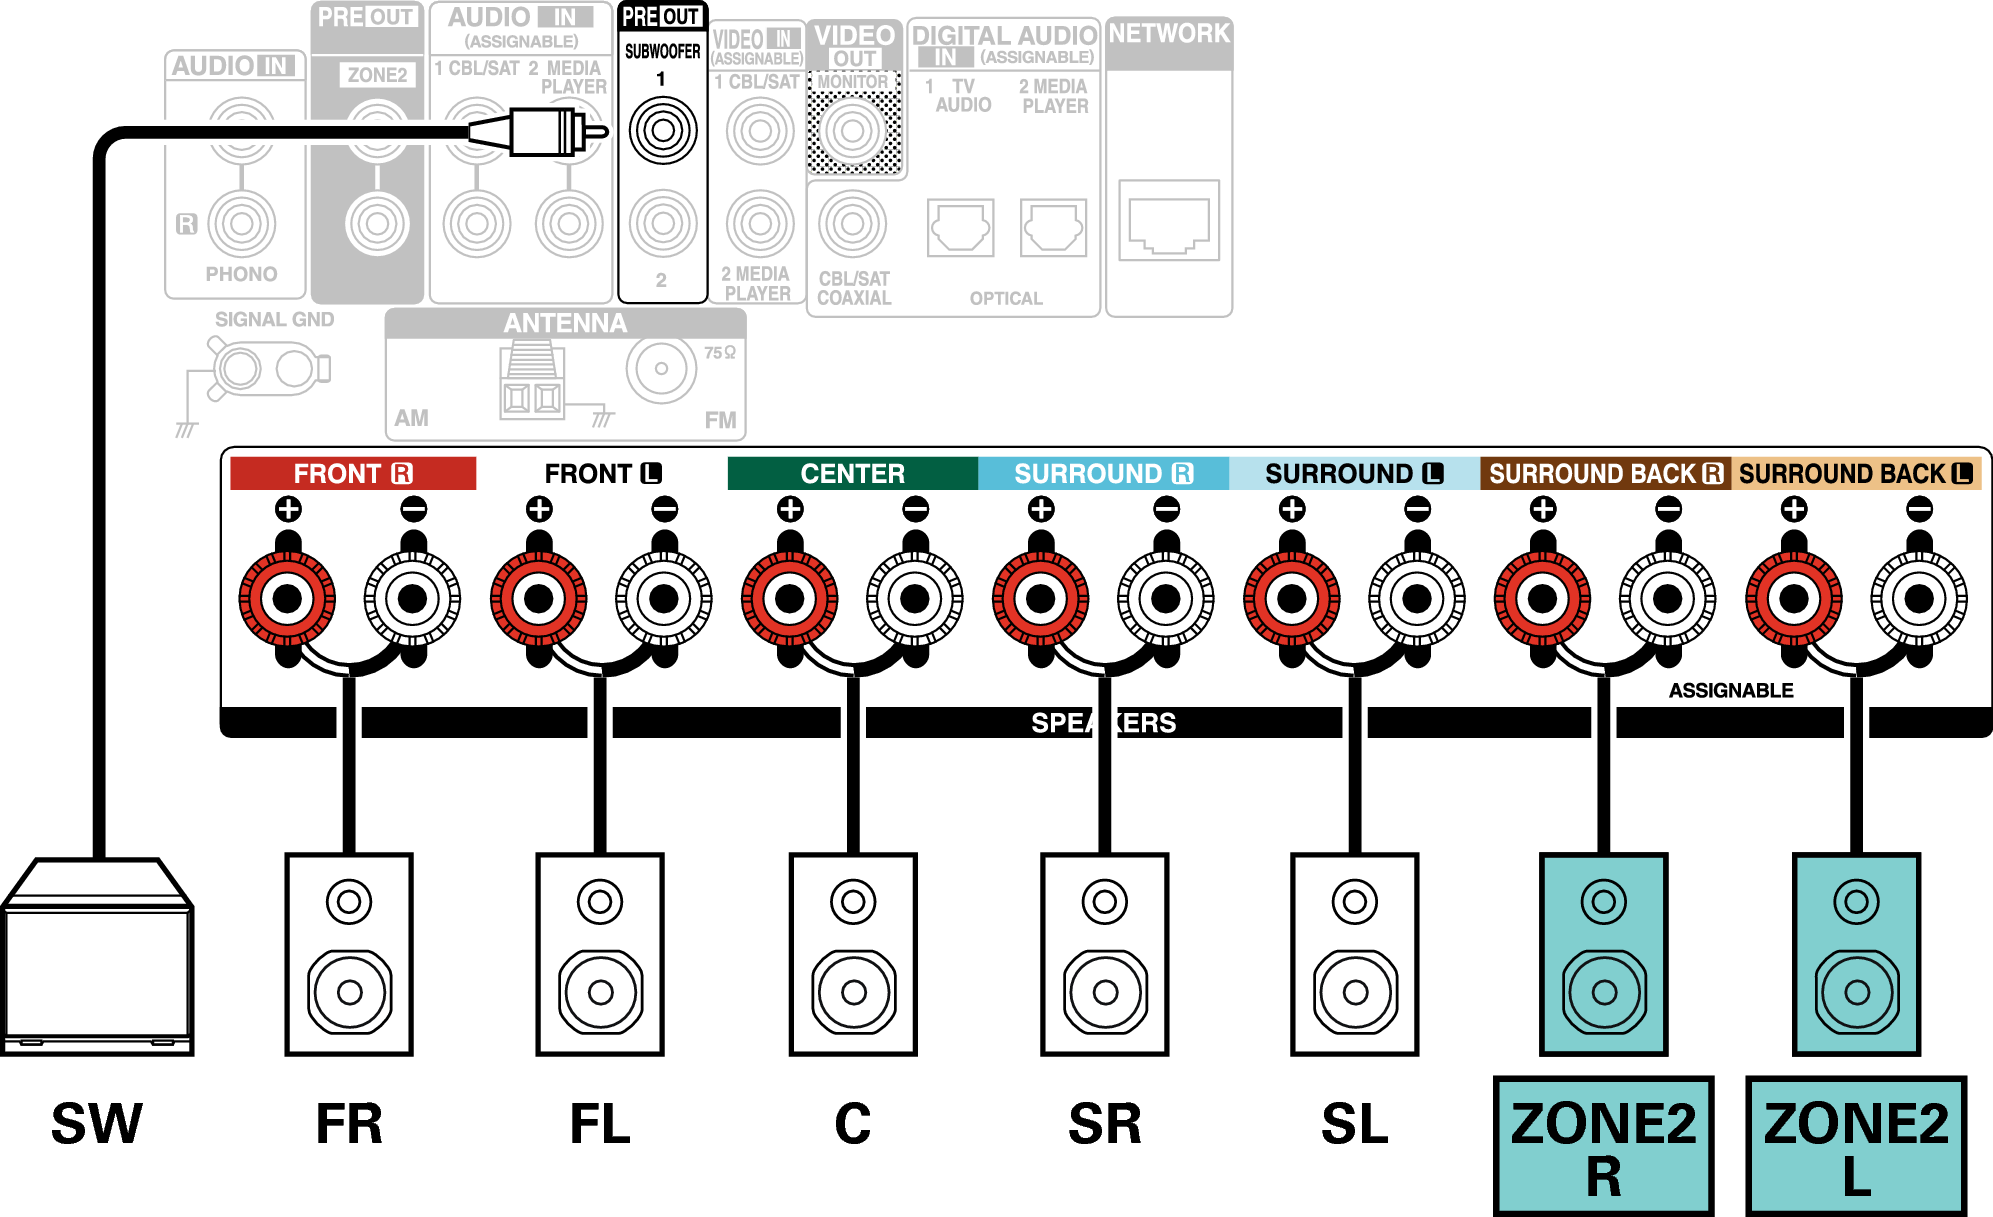 Conne SP 5.1 ZONE2 X17E3